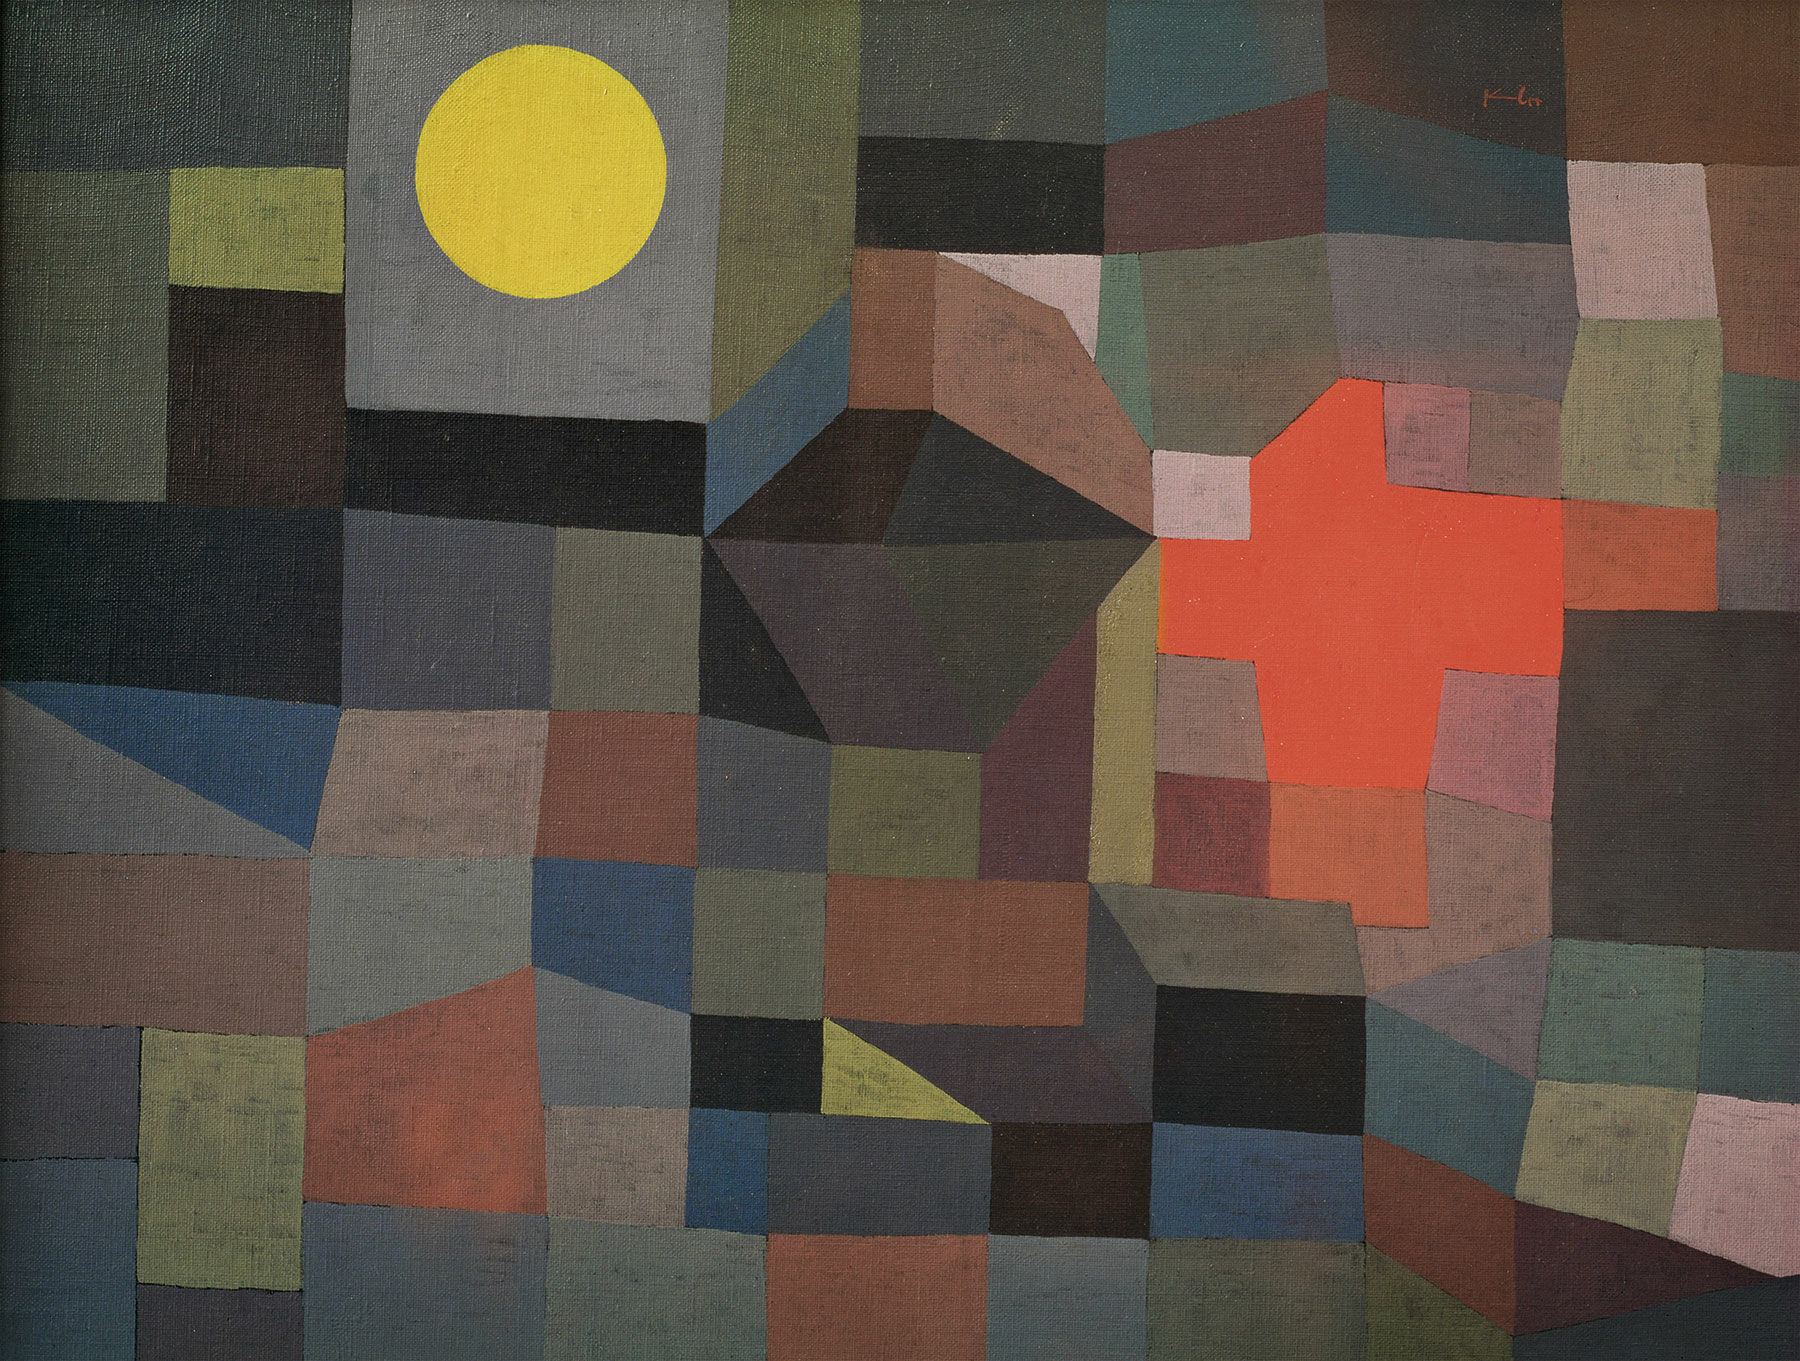 Bild "Eld vid fullmåne" (1933) von Paul Klee